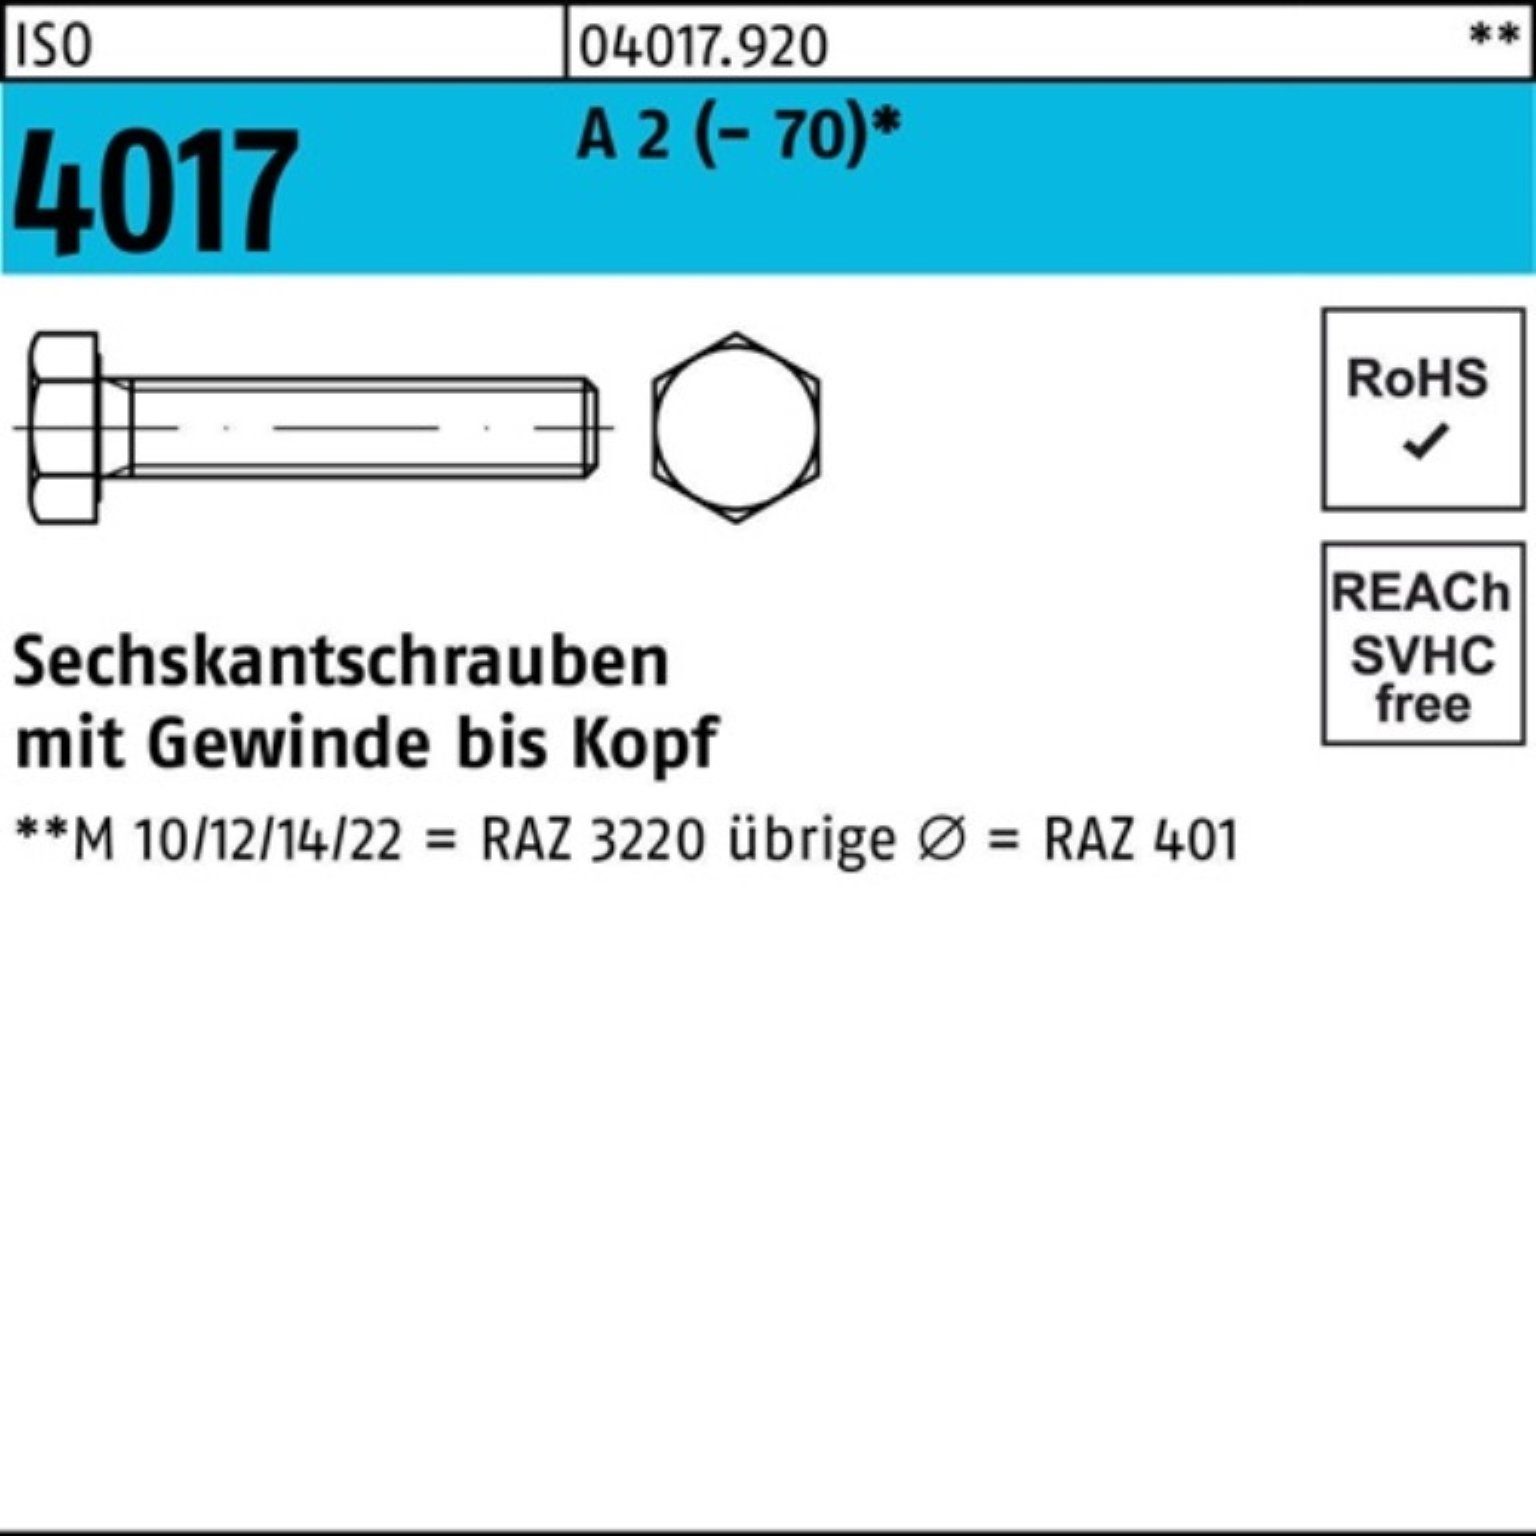 Bufab Sechskantschraube 100er Pack Sechskantschraube ISO 4017 VG M6x 100 A 2 (70) 100 Stück